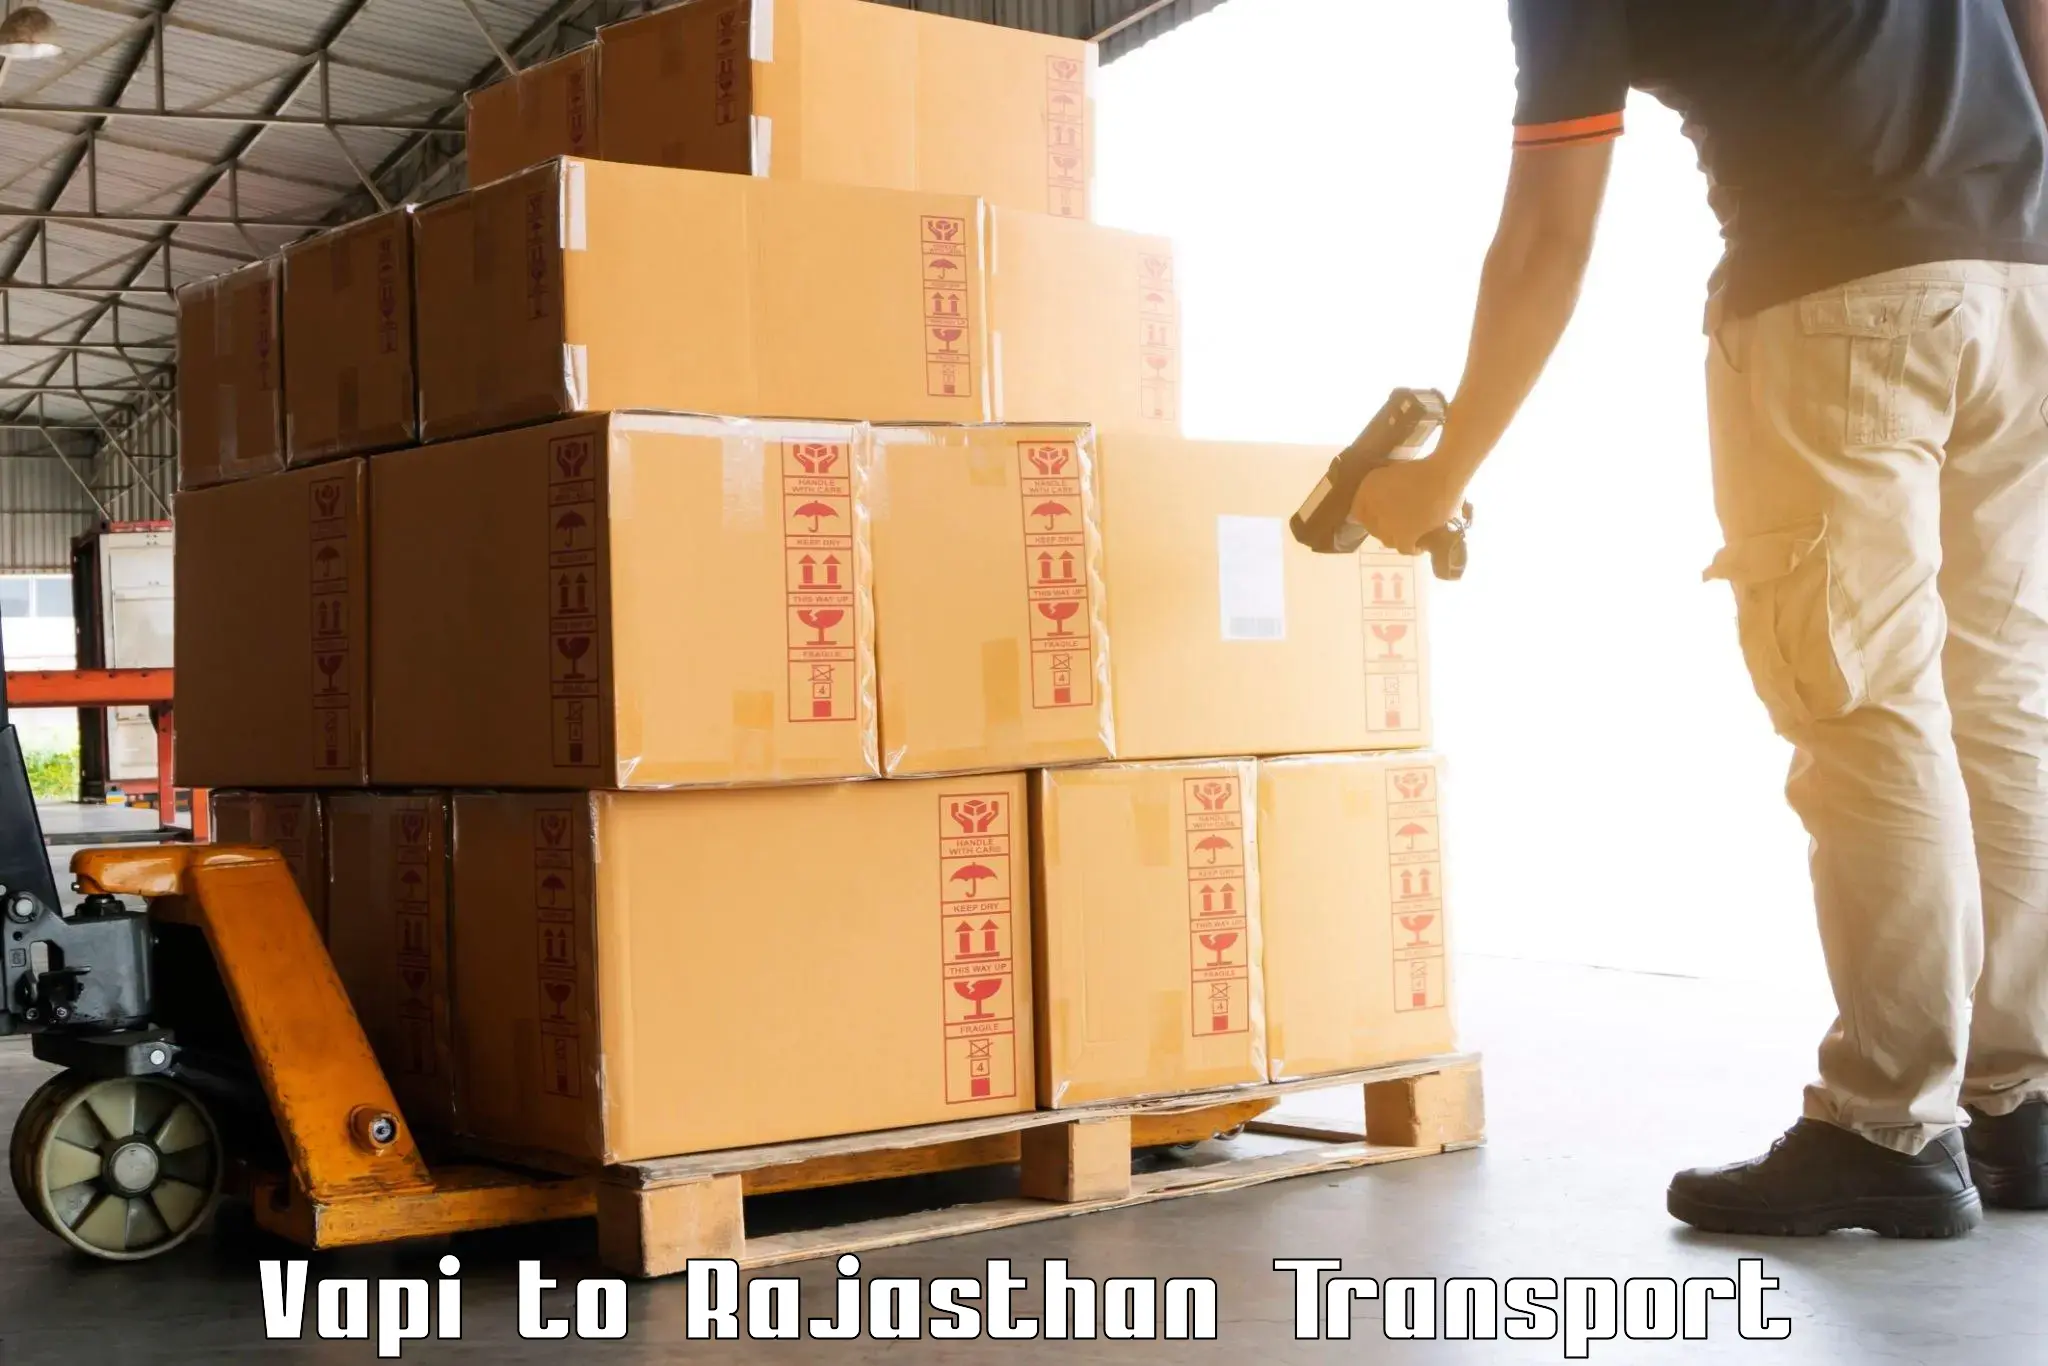 Land transport services Vapi to Jhalawar